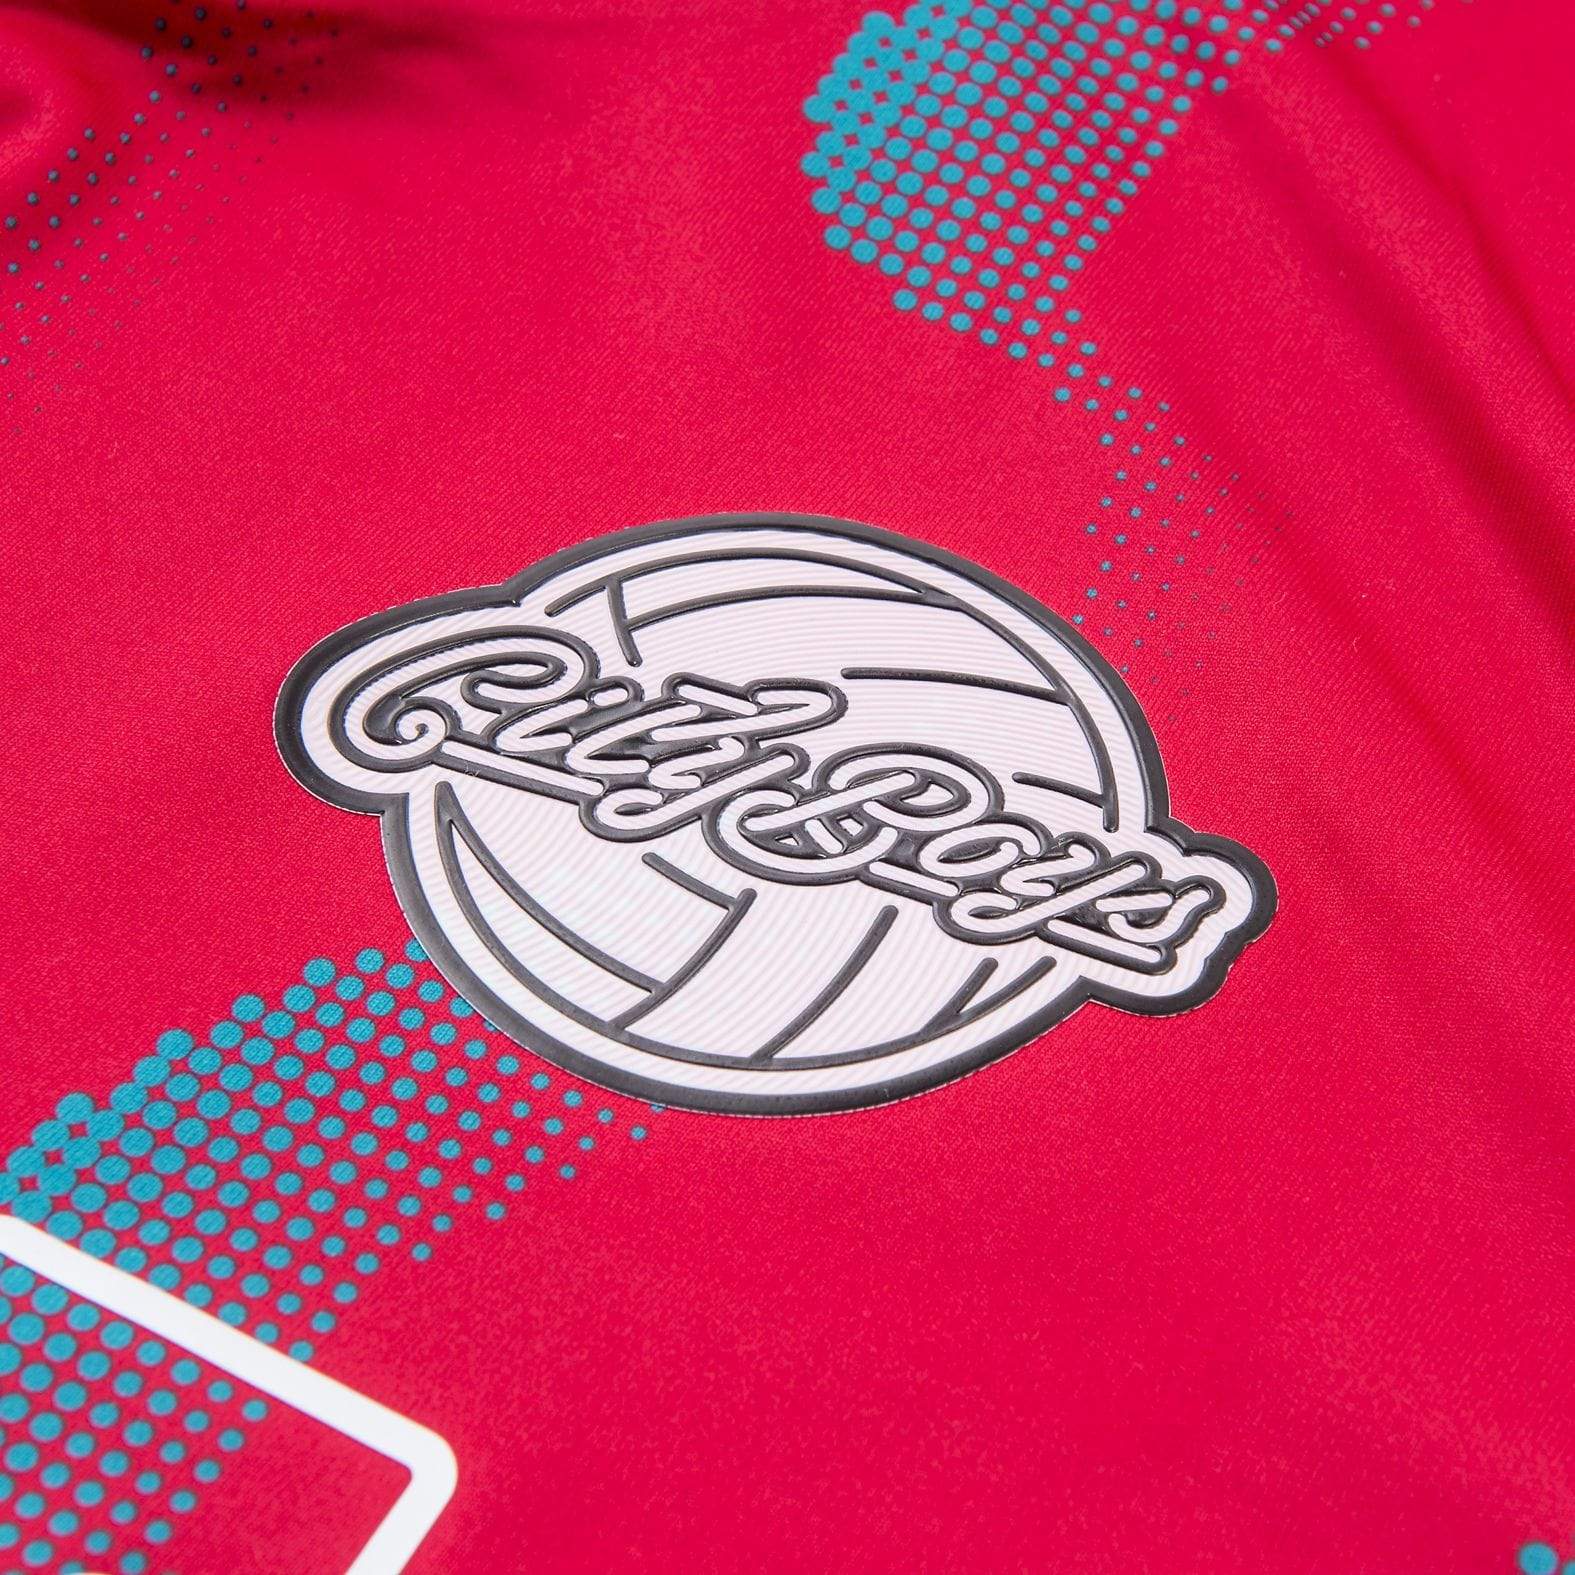 Hot Smoke City Boys FC v Inaria football shirt - Football Shirt Collective